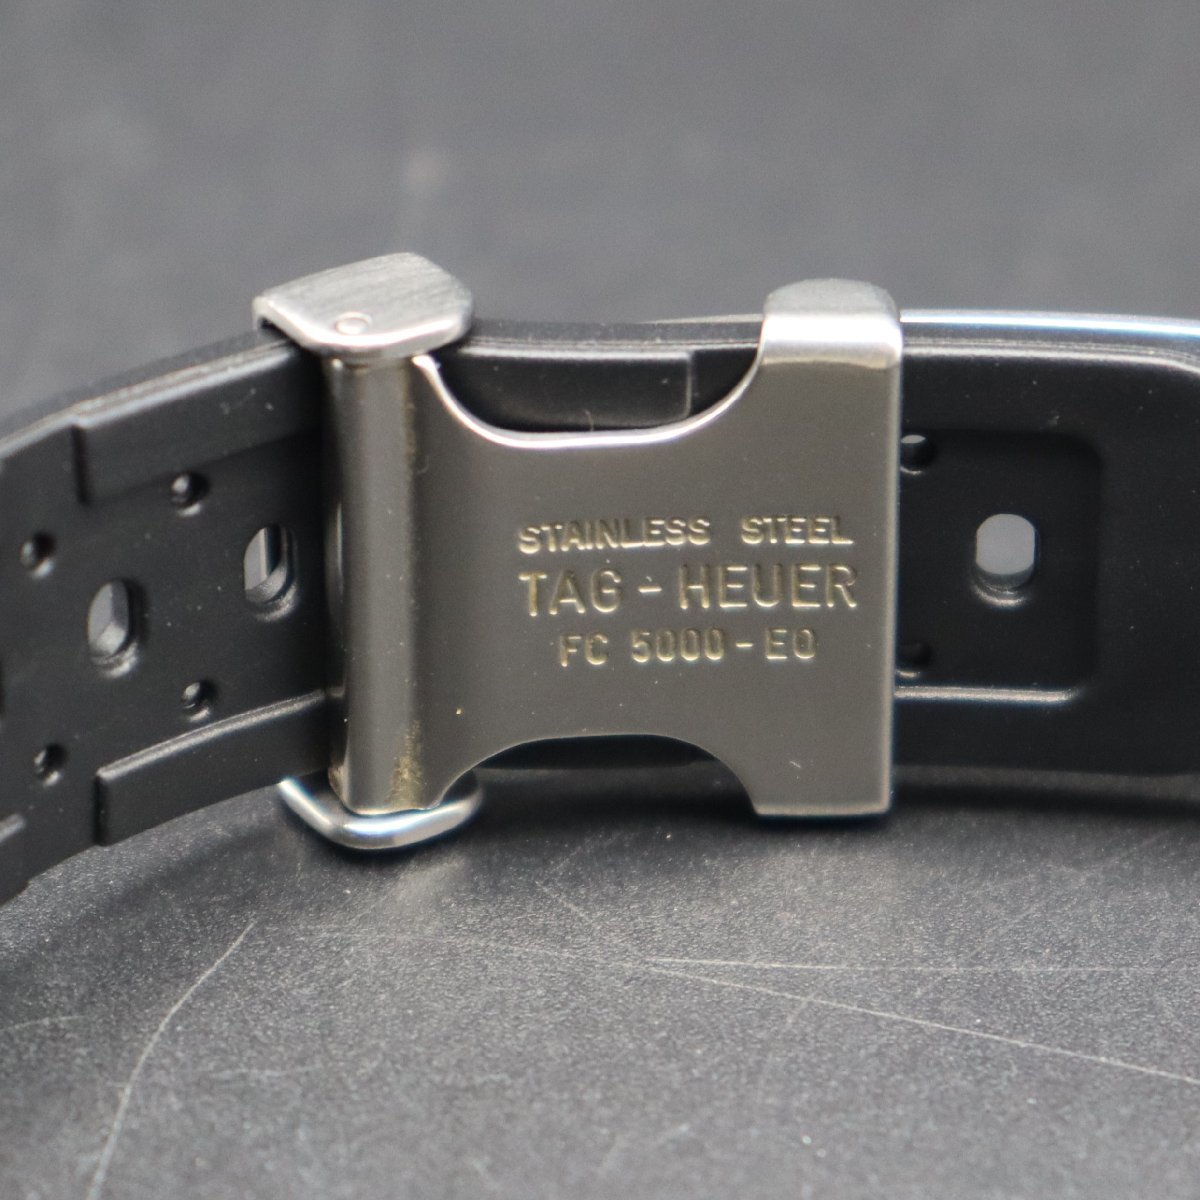 OH済 TAG HEUER タグホイヤー セルシリーズ 200M防水 WI2210 白文字盤 自動巻 デイト 新品ラバーベルト&純正バックル メンズ腕時計_画像6